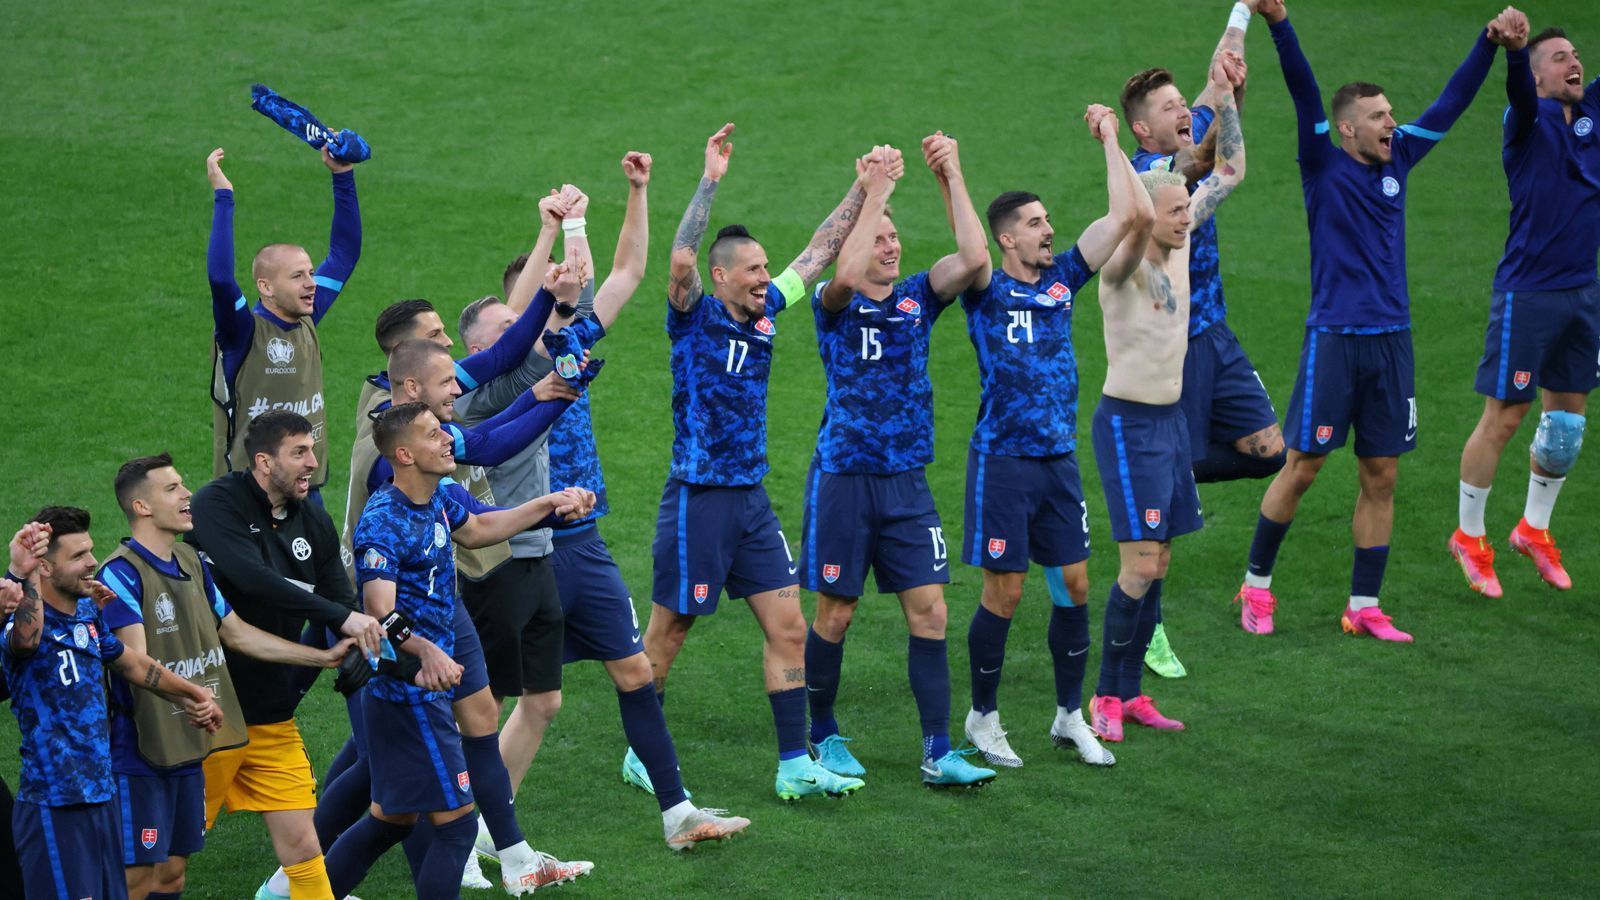 
                <strong>Slowakei feiert</strong><br>
                Die Slowakei feiert den Sieg - und auch die Tabellenführung, denn im zweiten Spiel gab es ein Remis.
              